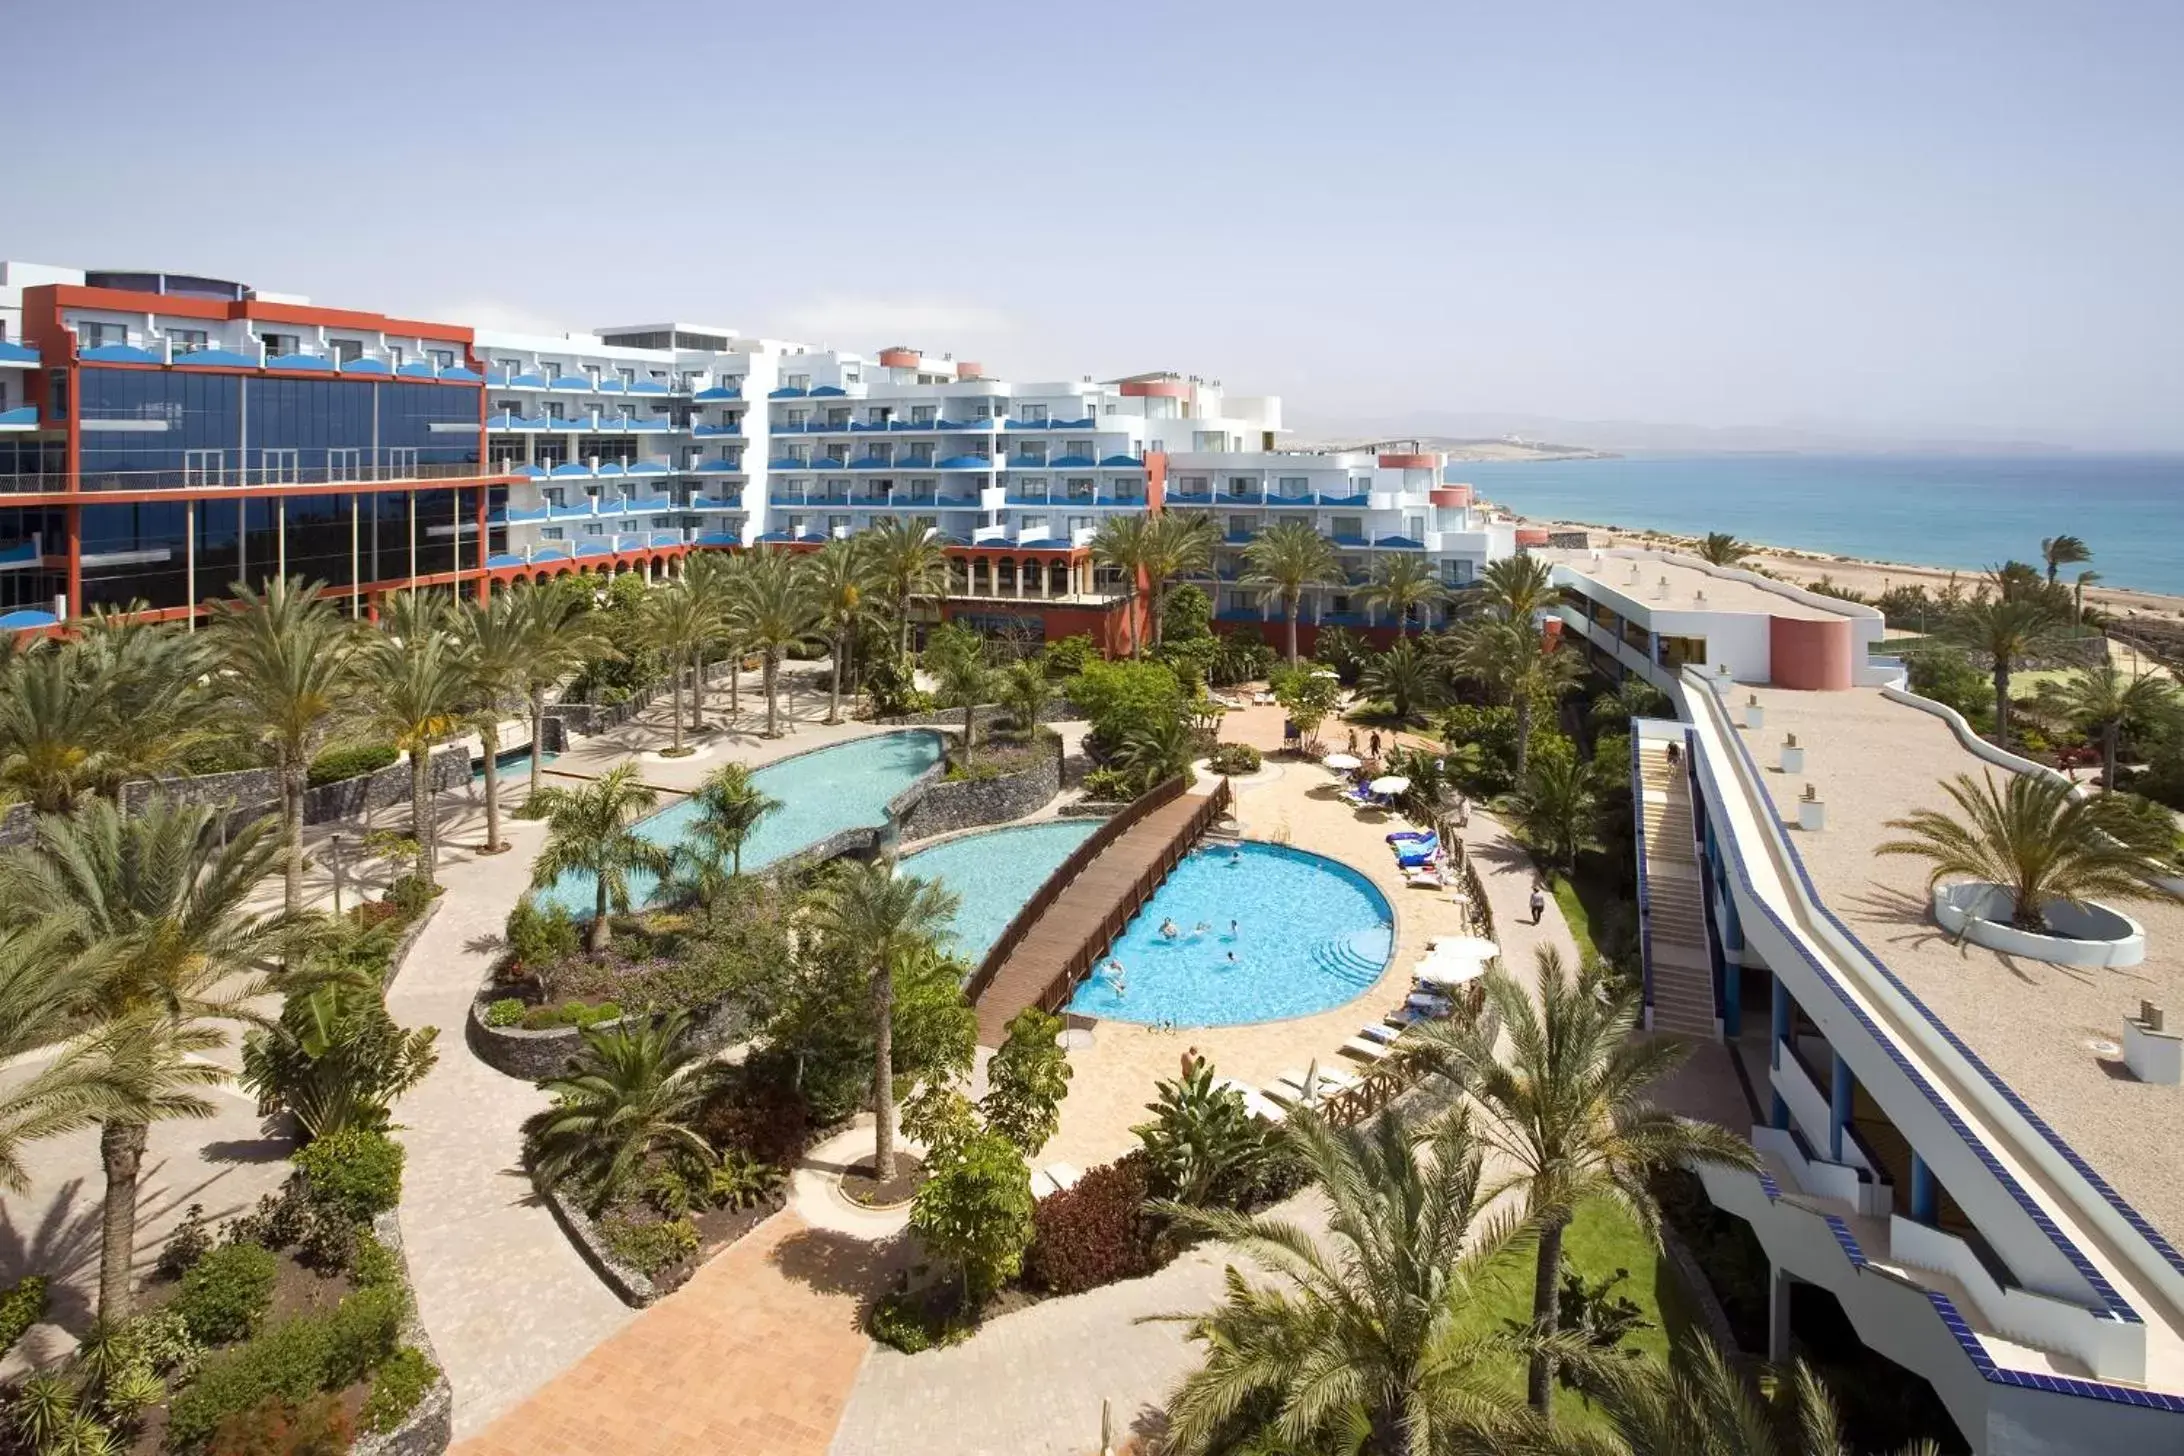 Solarium, Pool View in R2 Hotel Pajara Beach